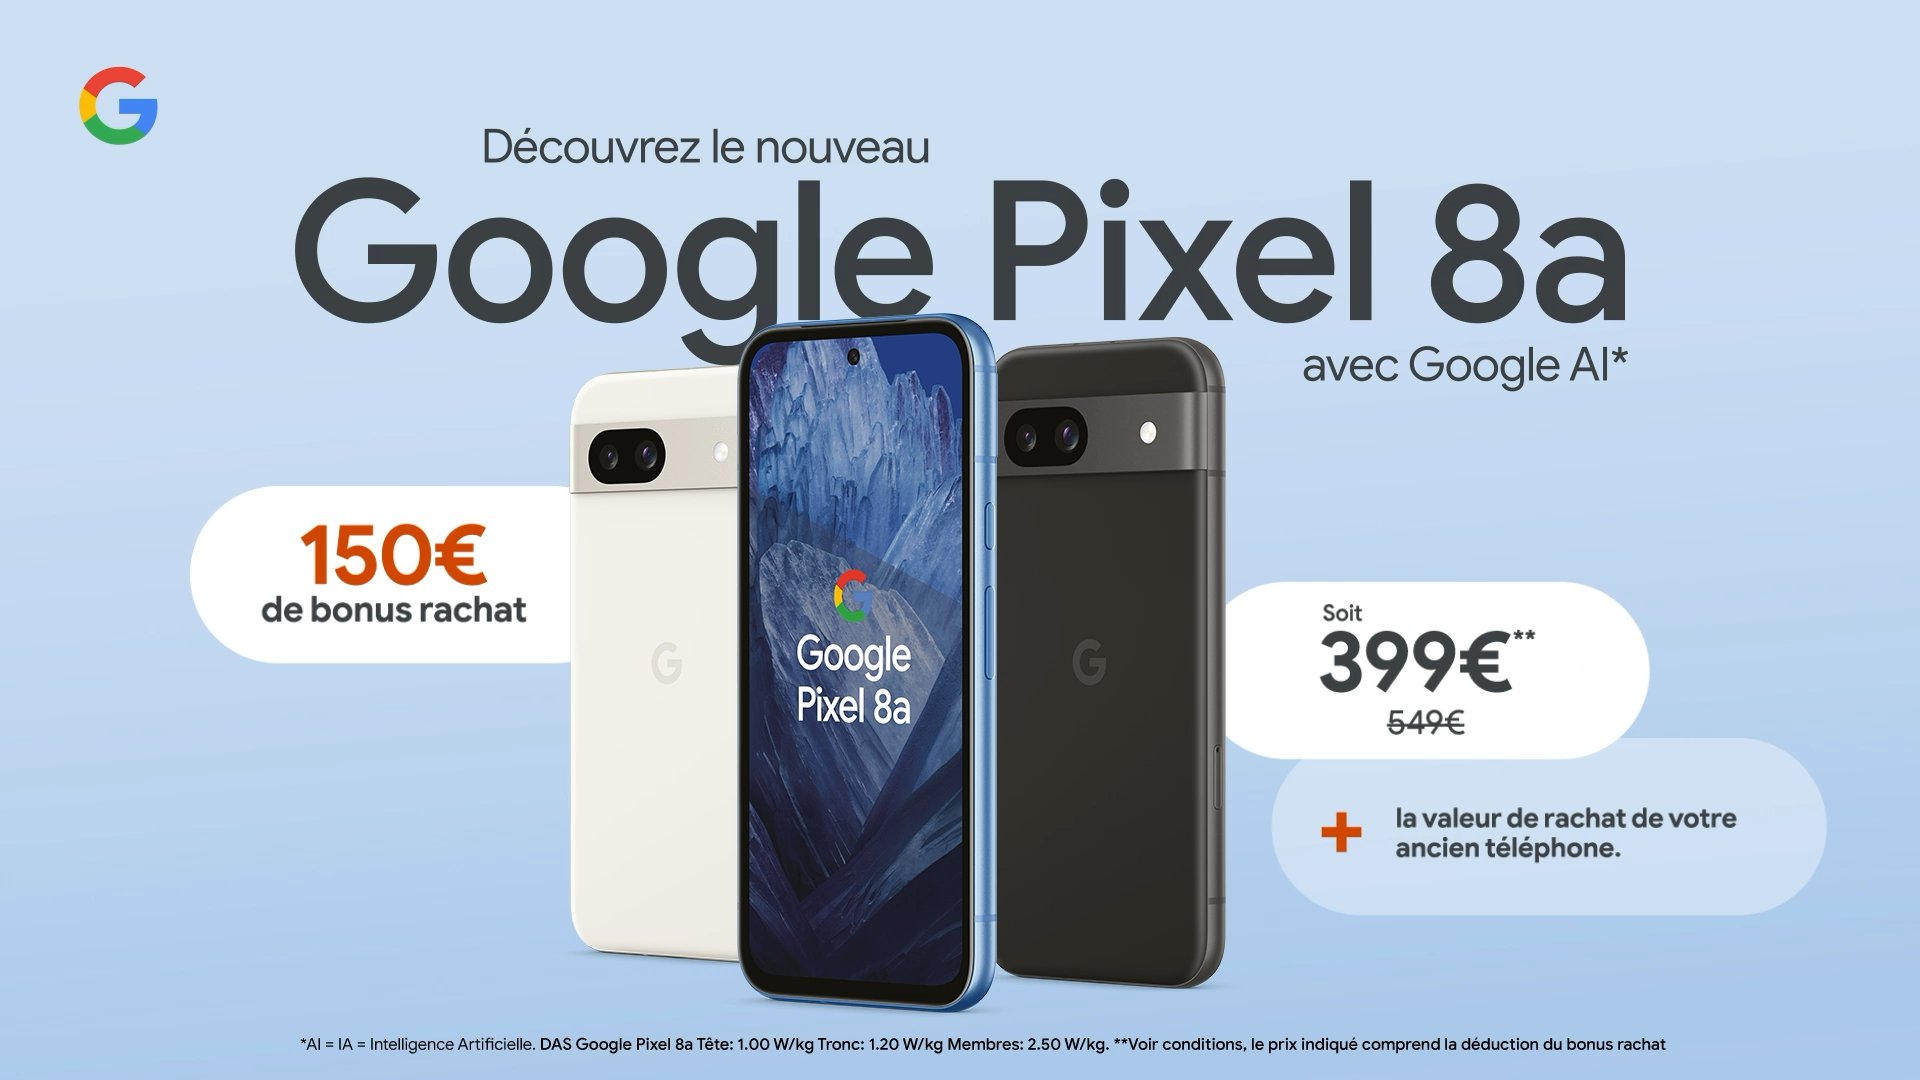 Google Pixel 8a leaked European prices